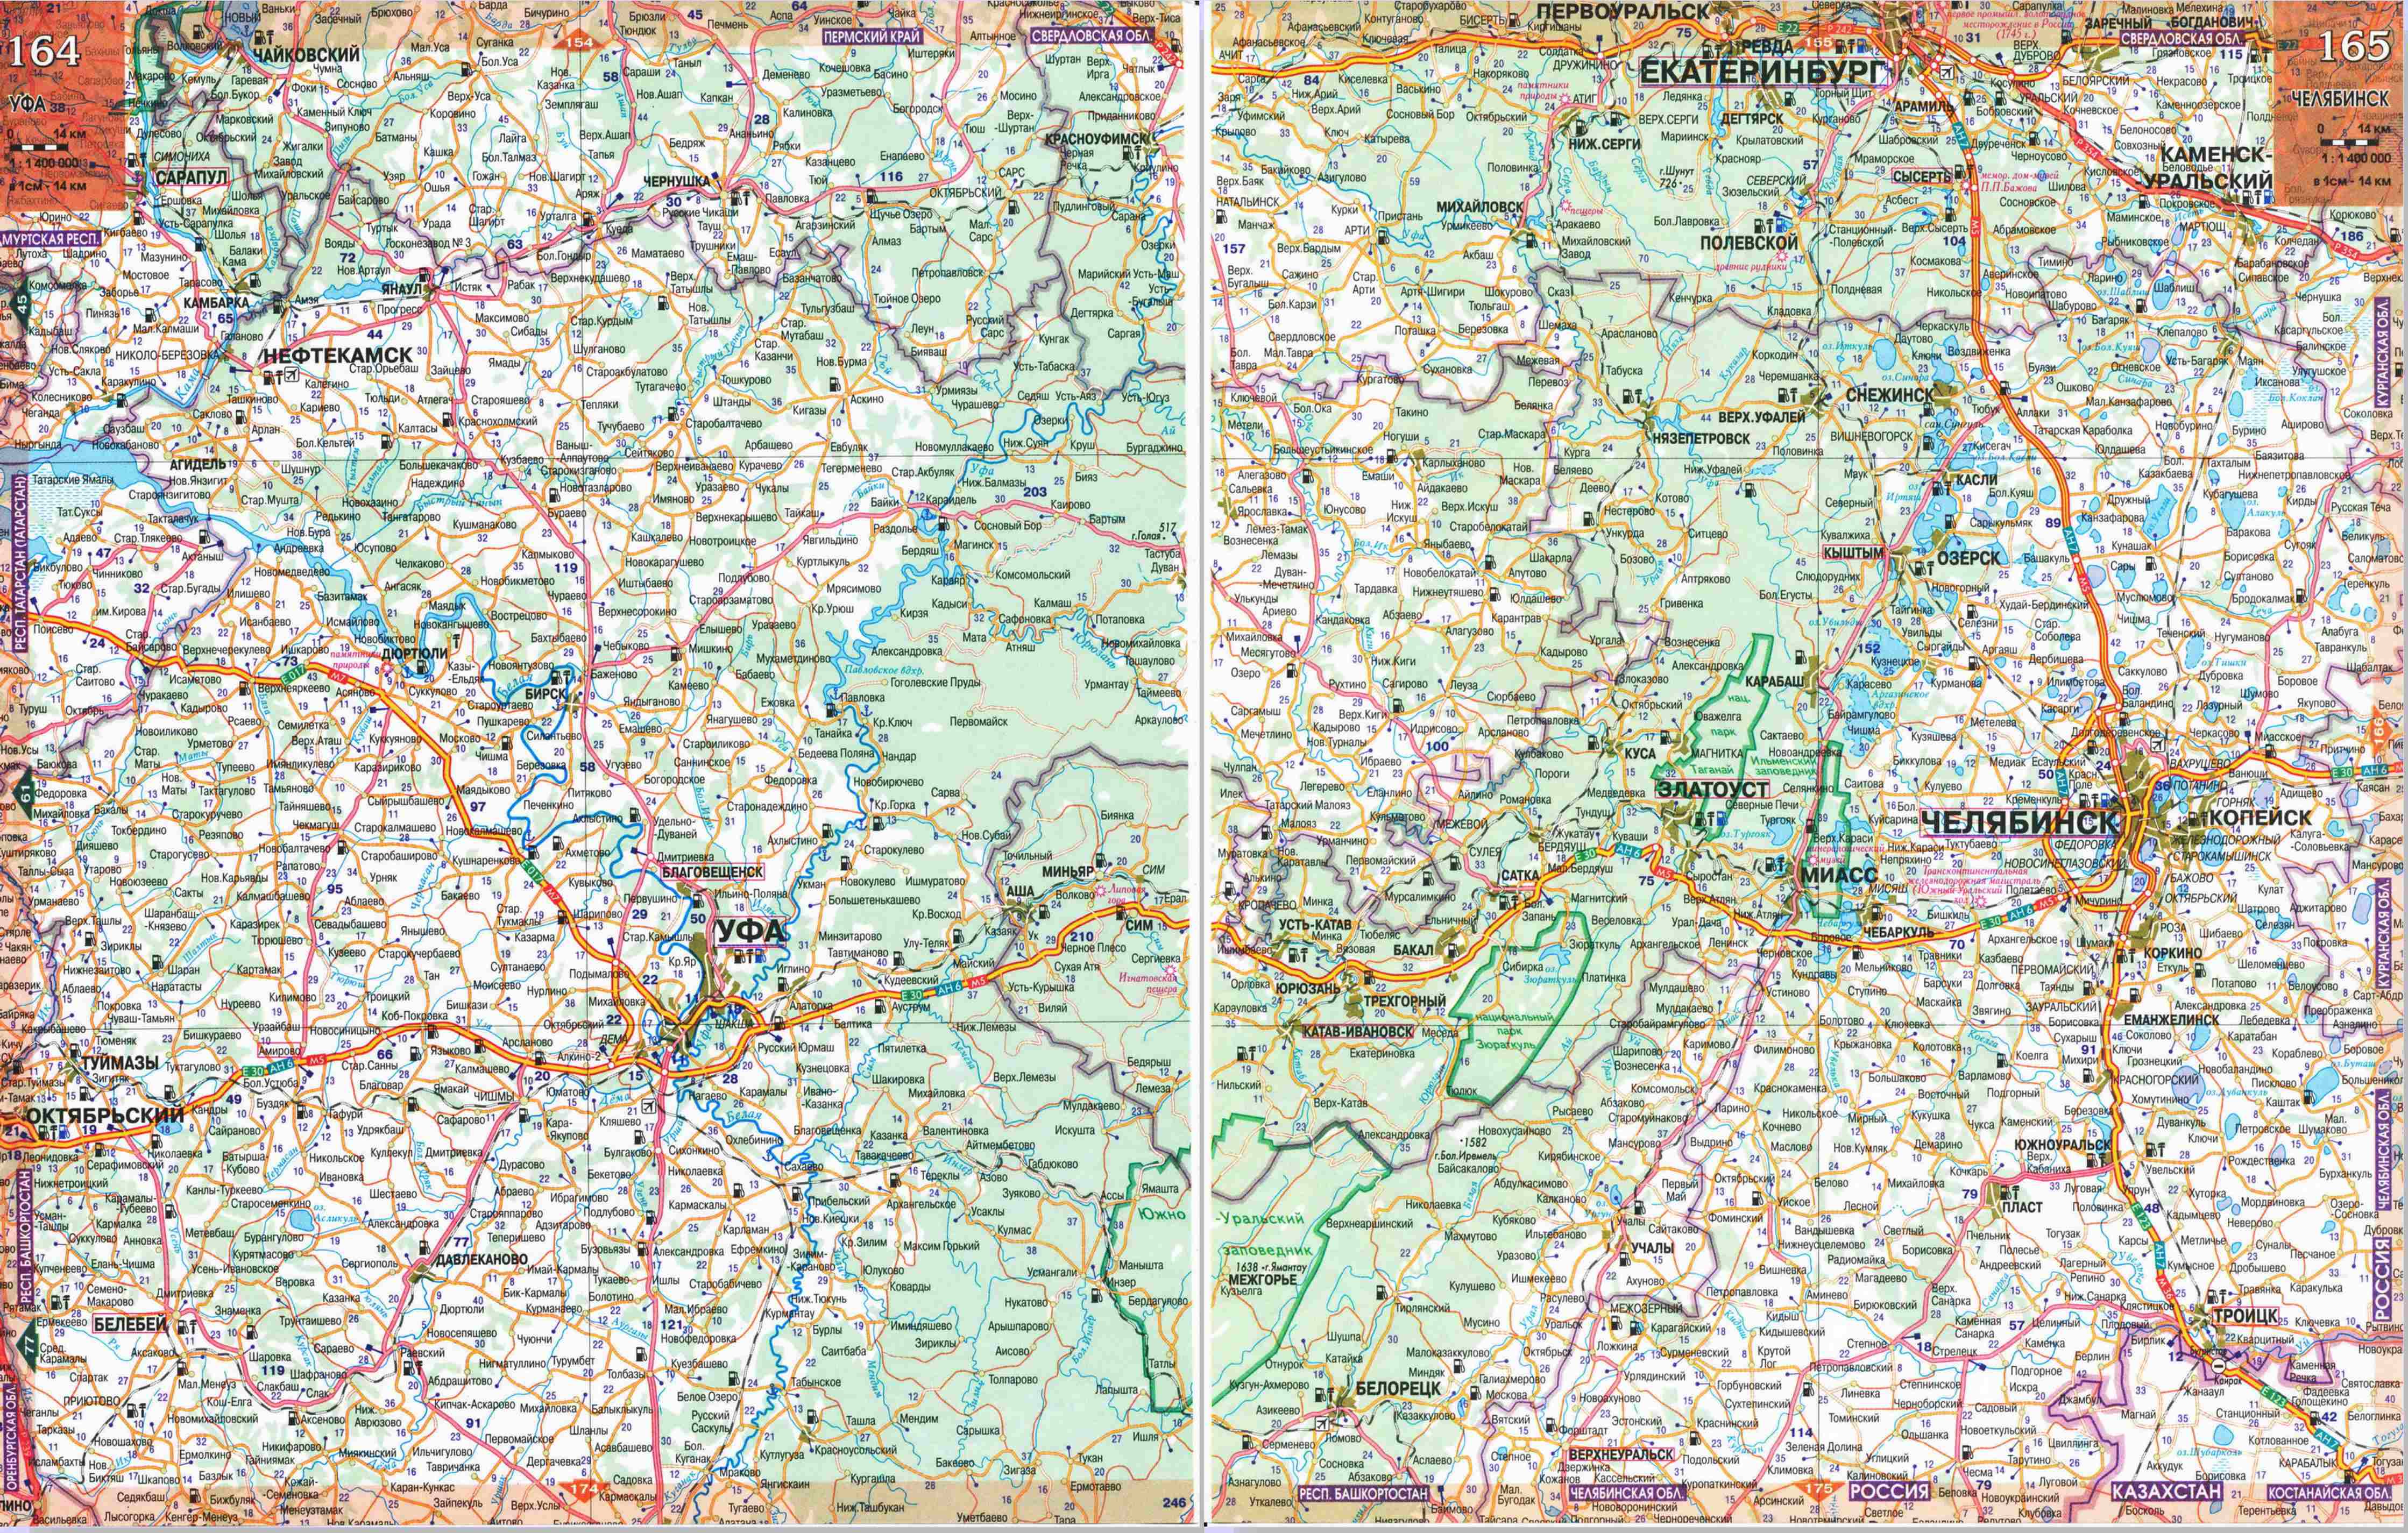 Автомобильные дороги Урала - карта Свердловской области. Большая подробная карта Свердловской области и соседних регионов, A1 - 